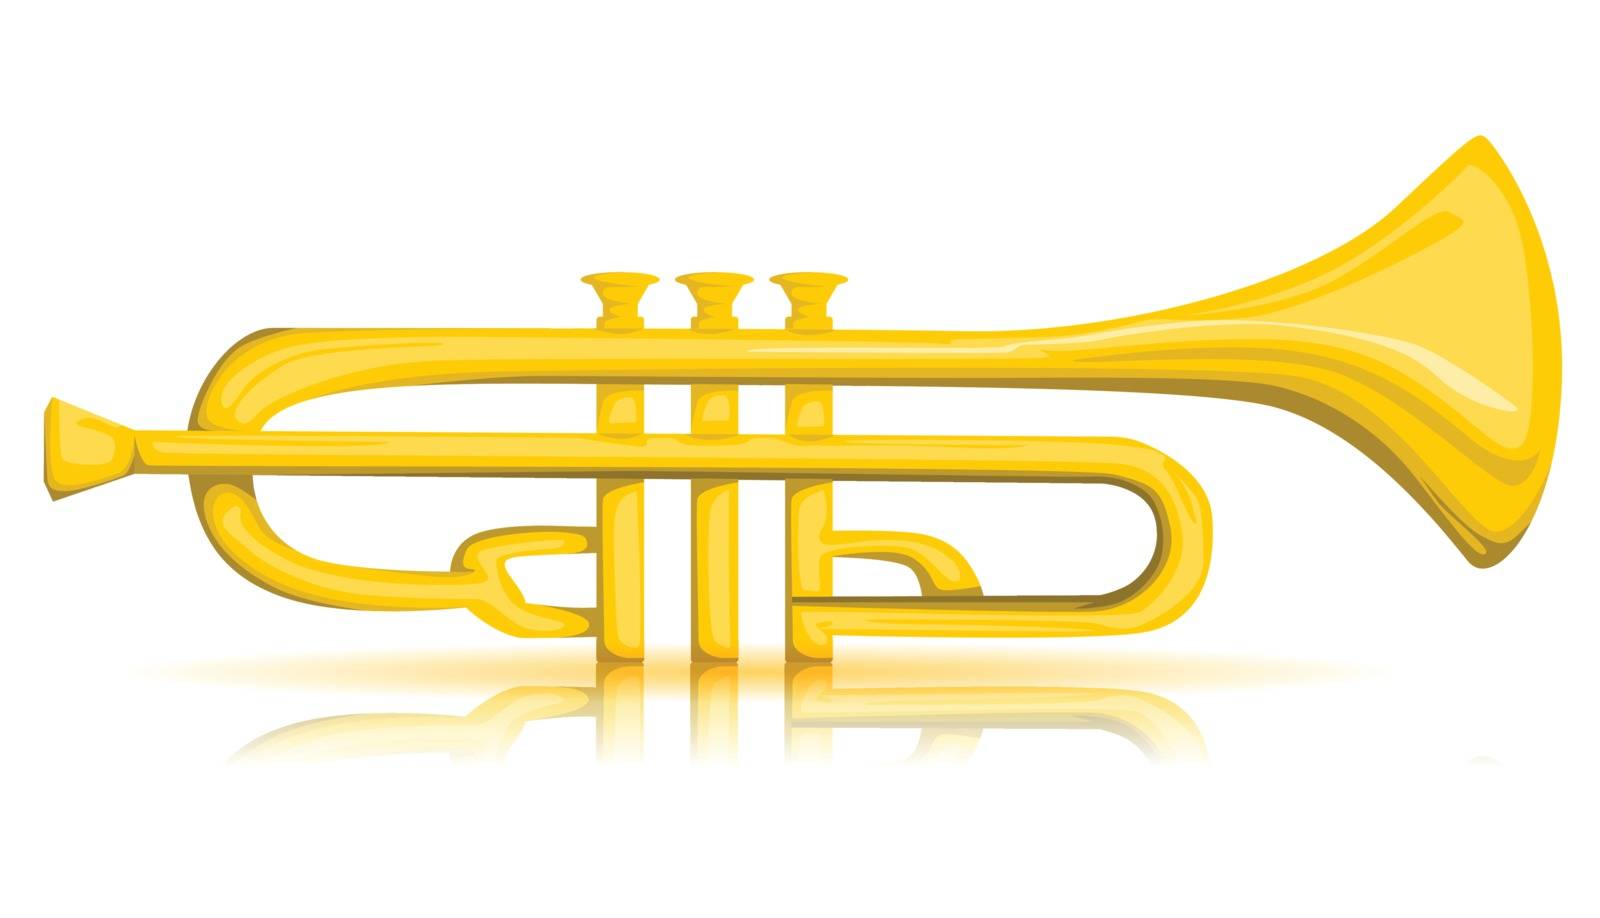 Vector trumpet